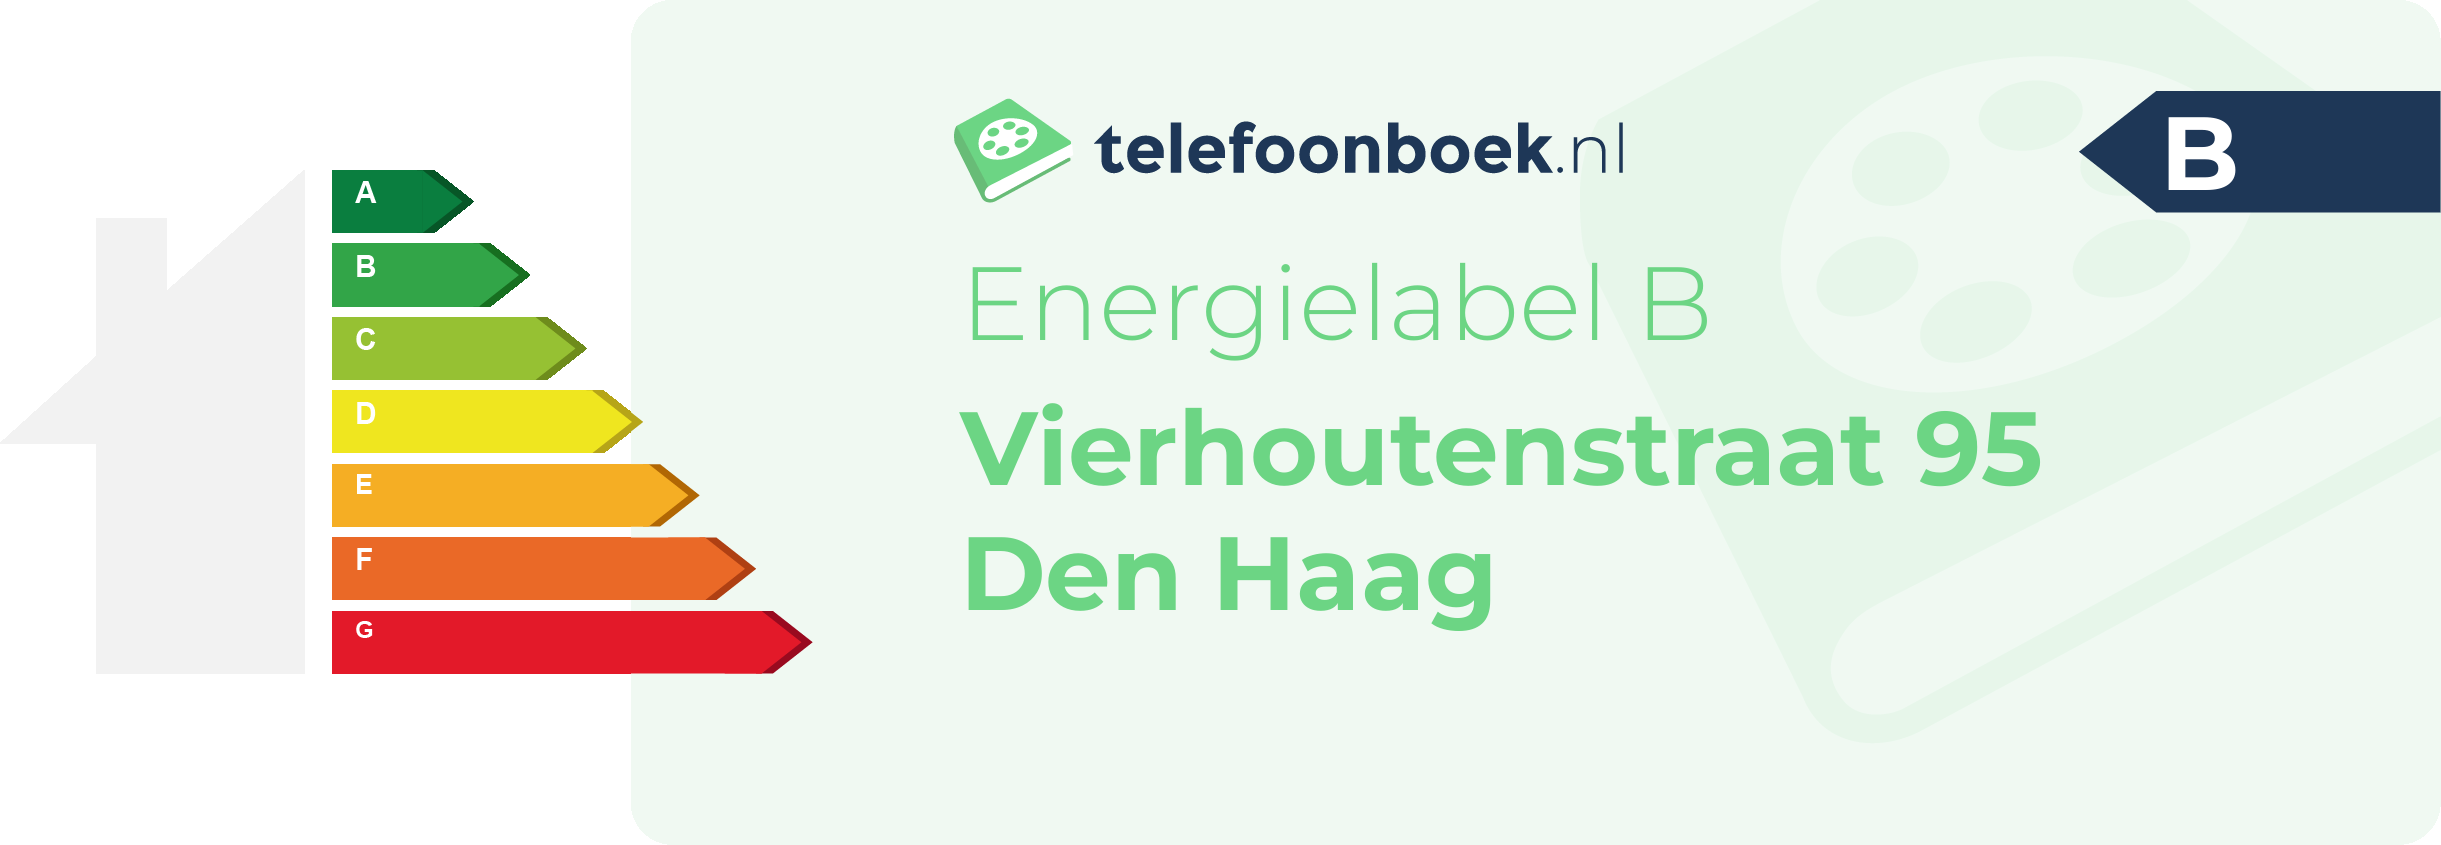 Energielabel Vierhoutenstraat 95 Den Haag